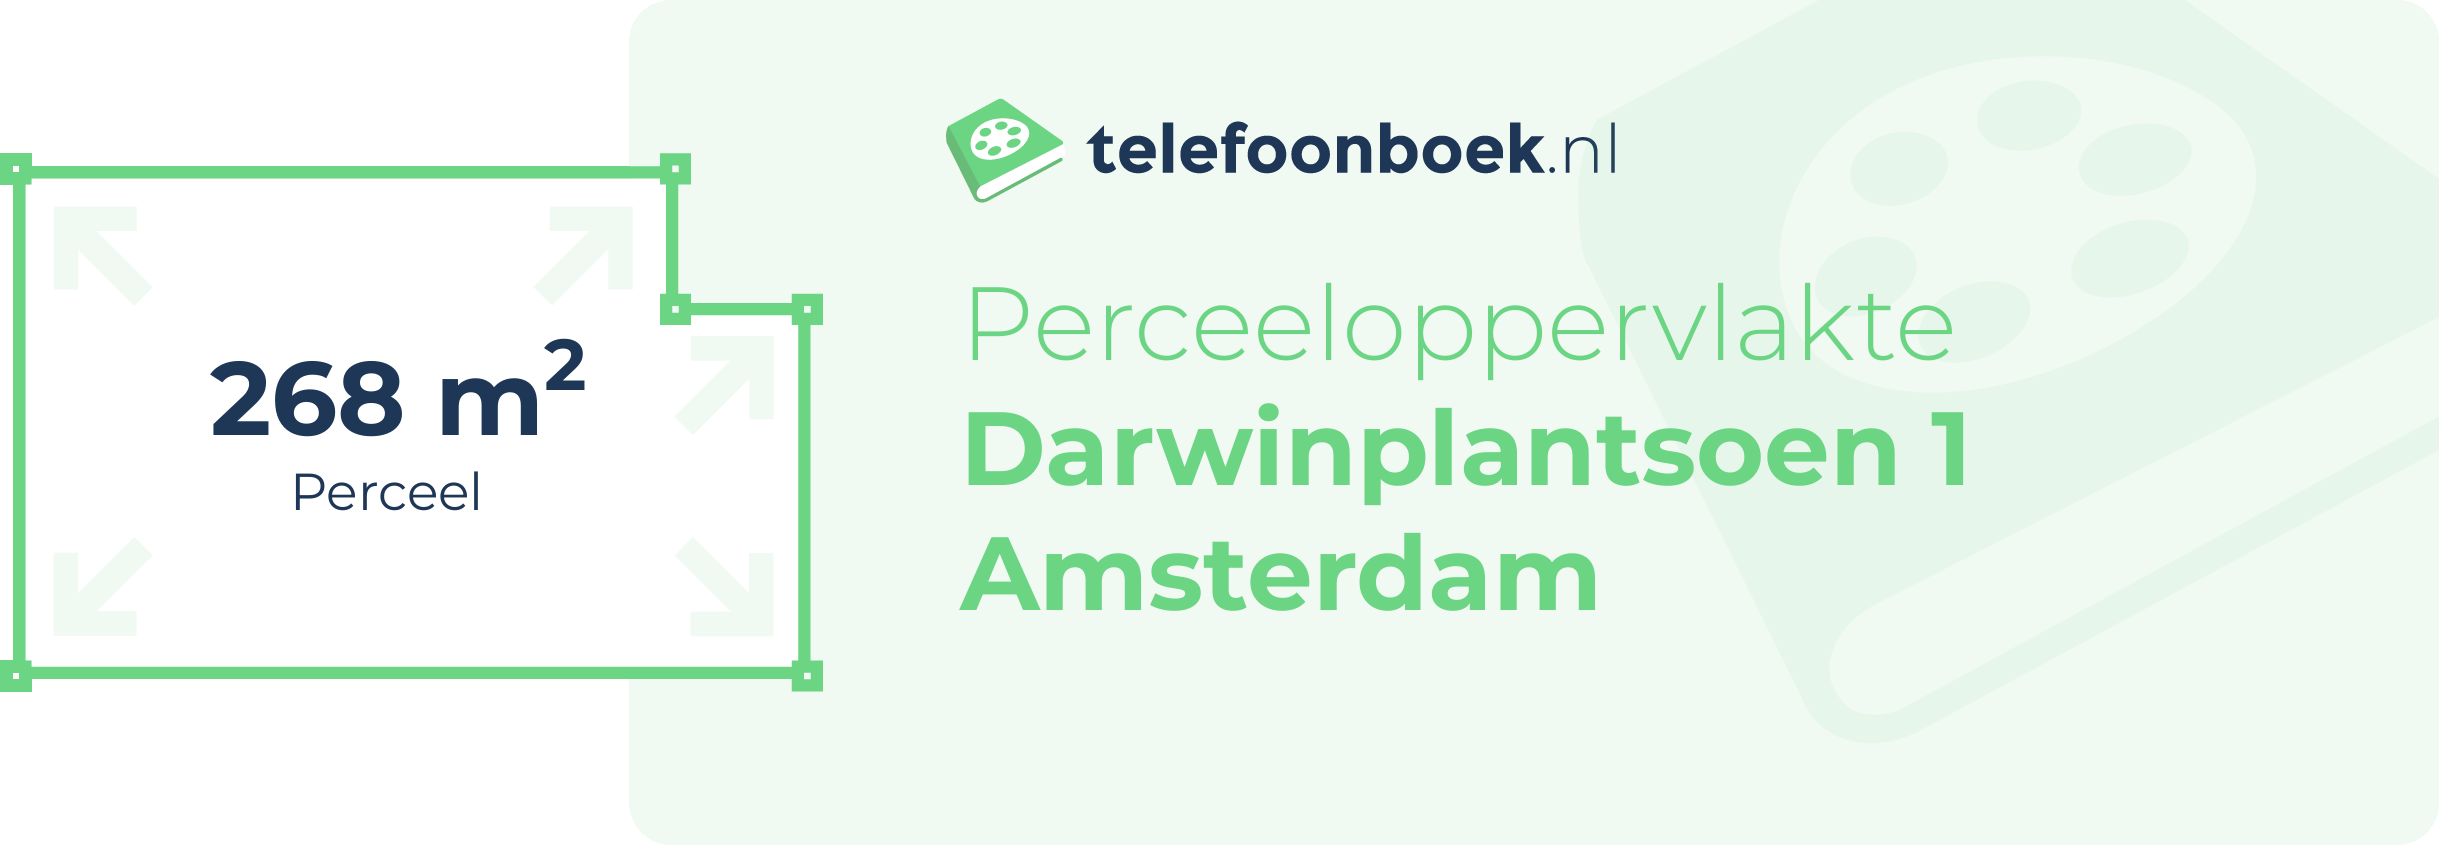 Perceeloppervlakte Darwinplantsoen 1 Amsterdam